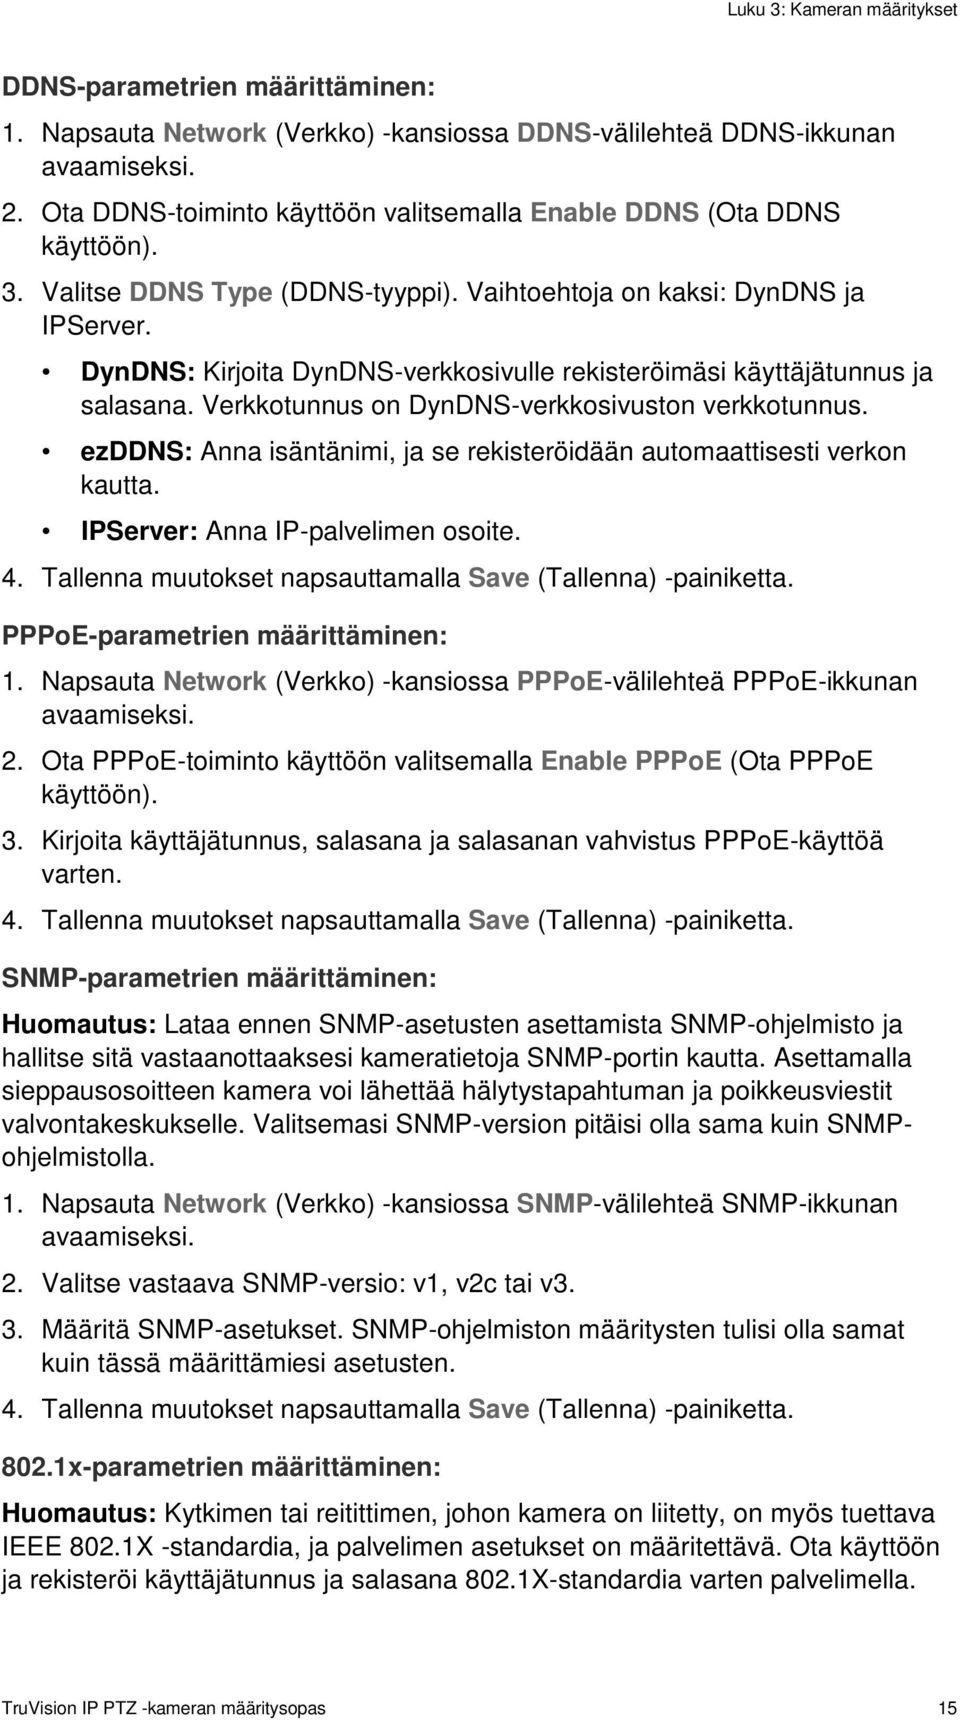 Verkkotunnus on DynDNS-verkkosivuston verkkotunnus. ezddns: Anna isäntänimi, ja se rekisteröidään automaattisesti verkon kautta. IPServer: Anna IP-palvelimen osoite. 4.